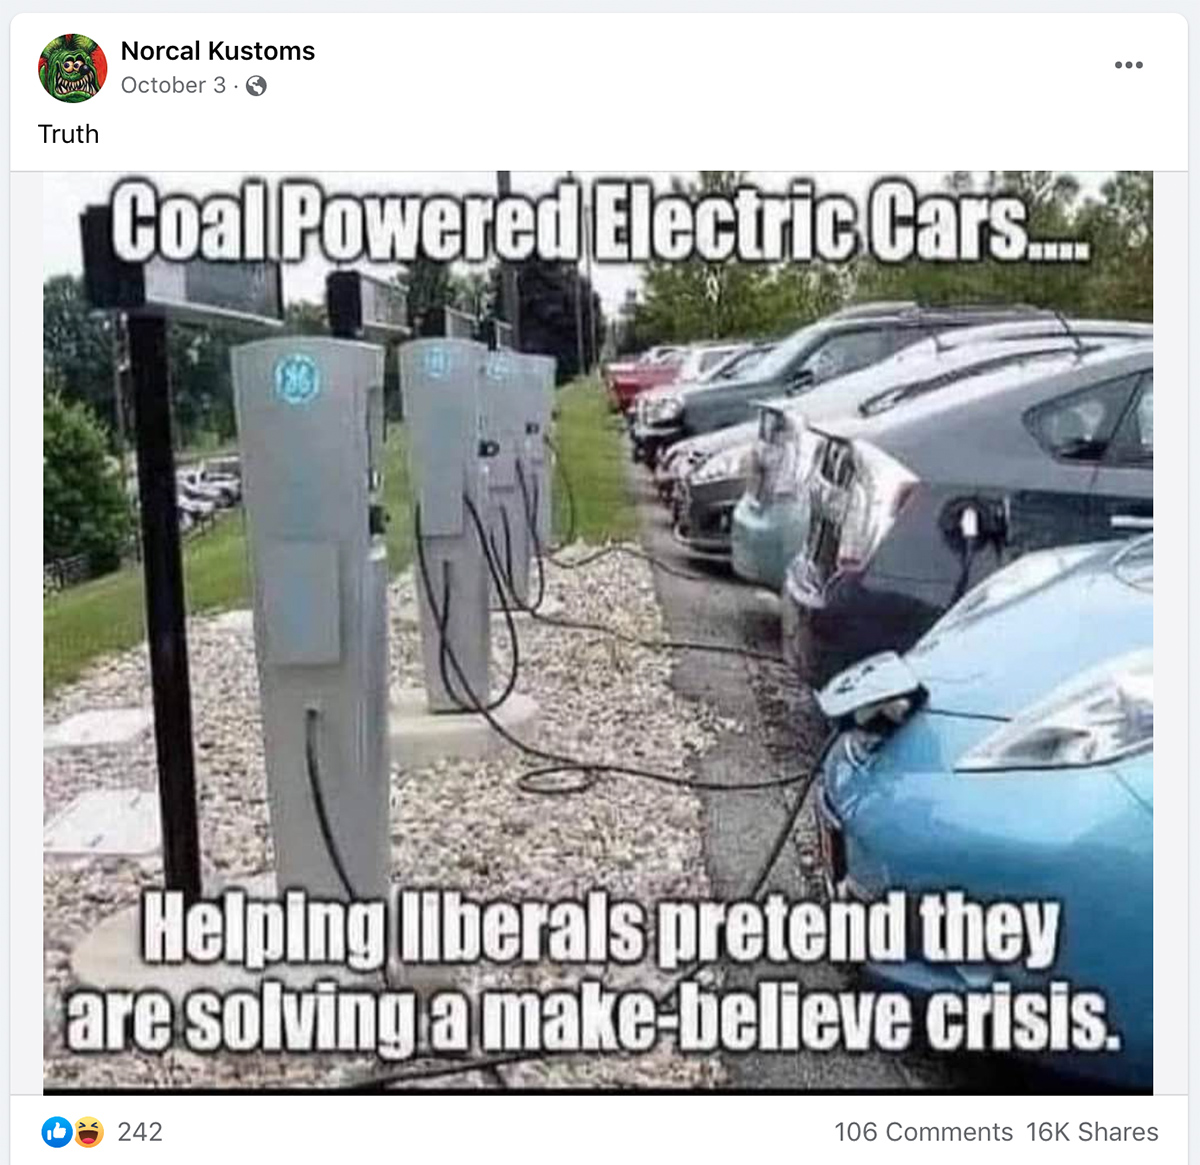 Un meme no mostró autos eléctricos a carbón en un estacionamiento.